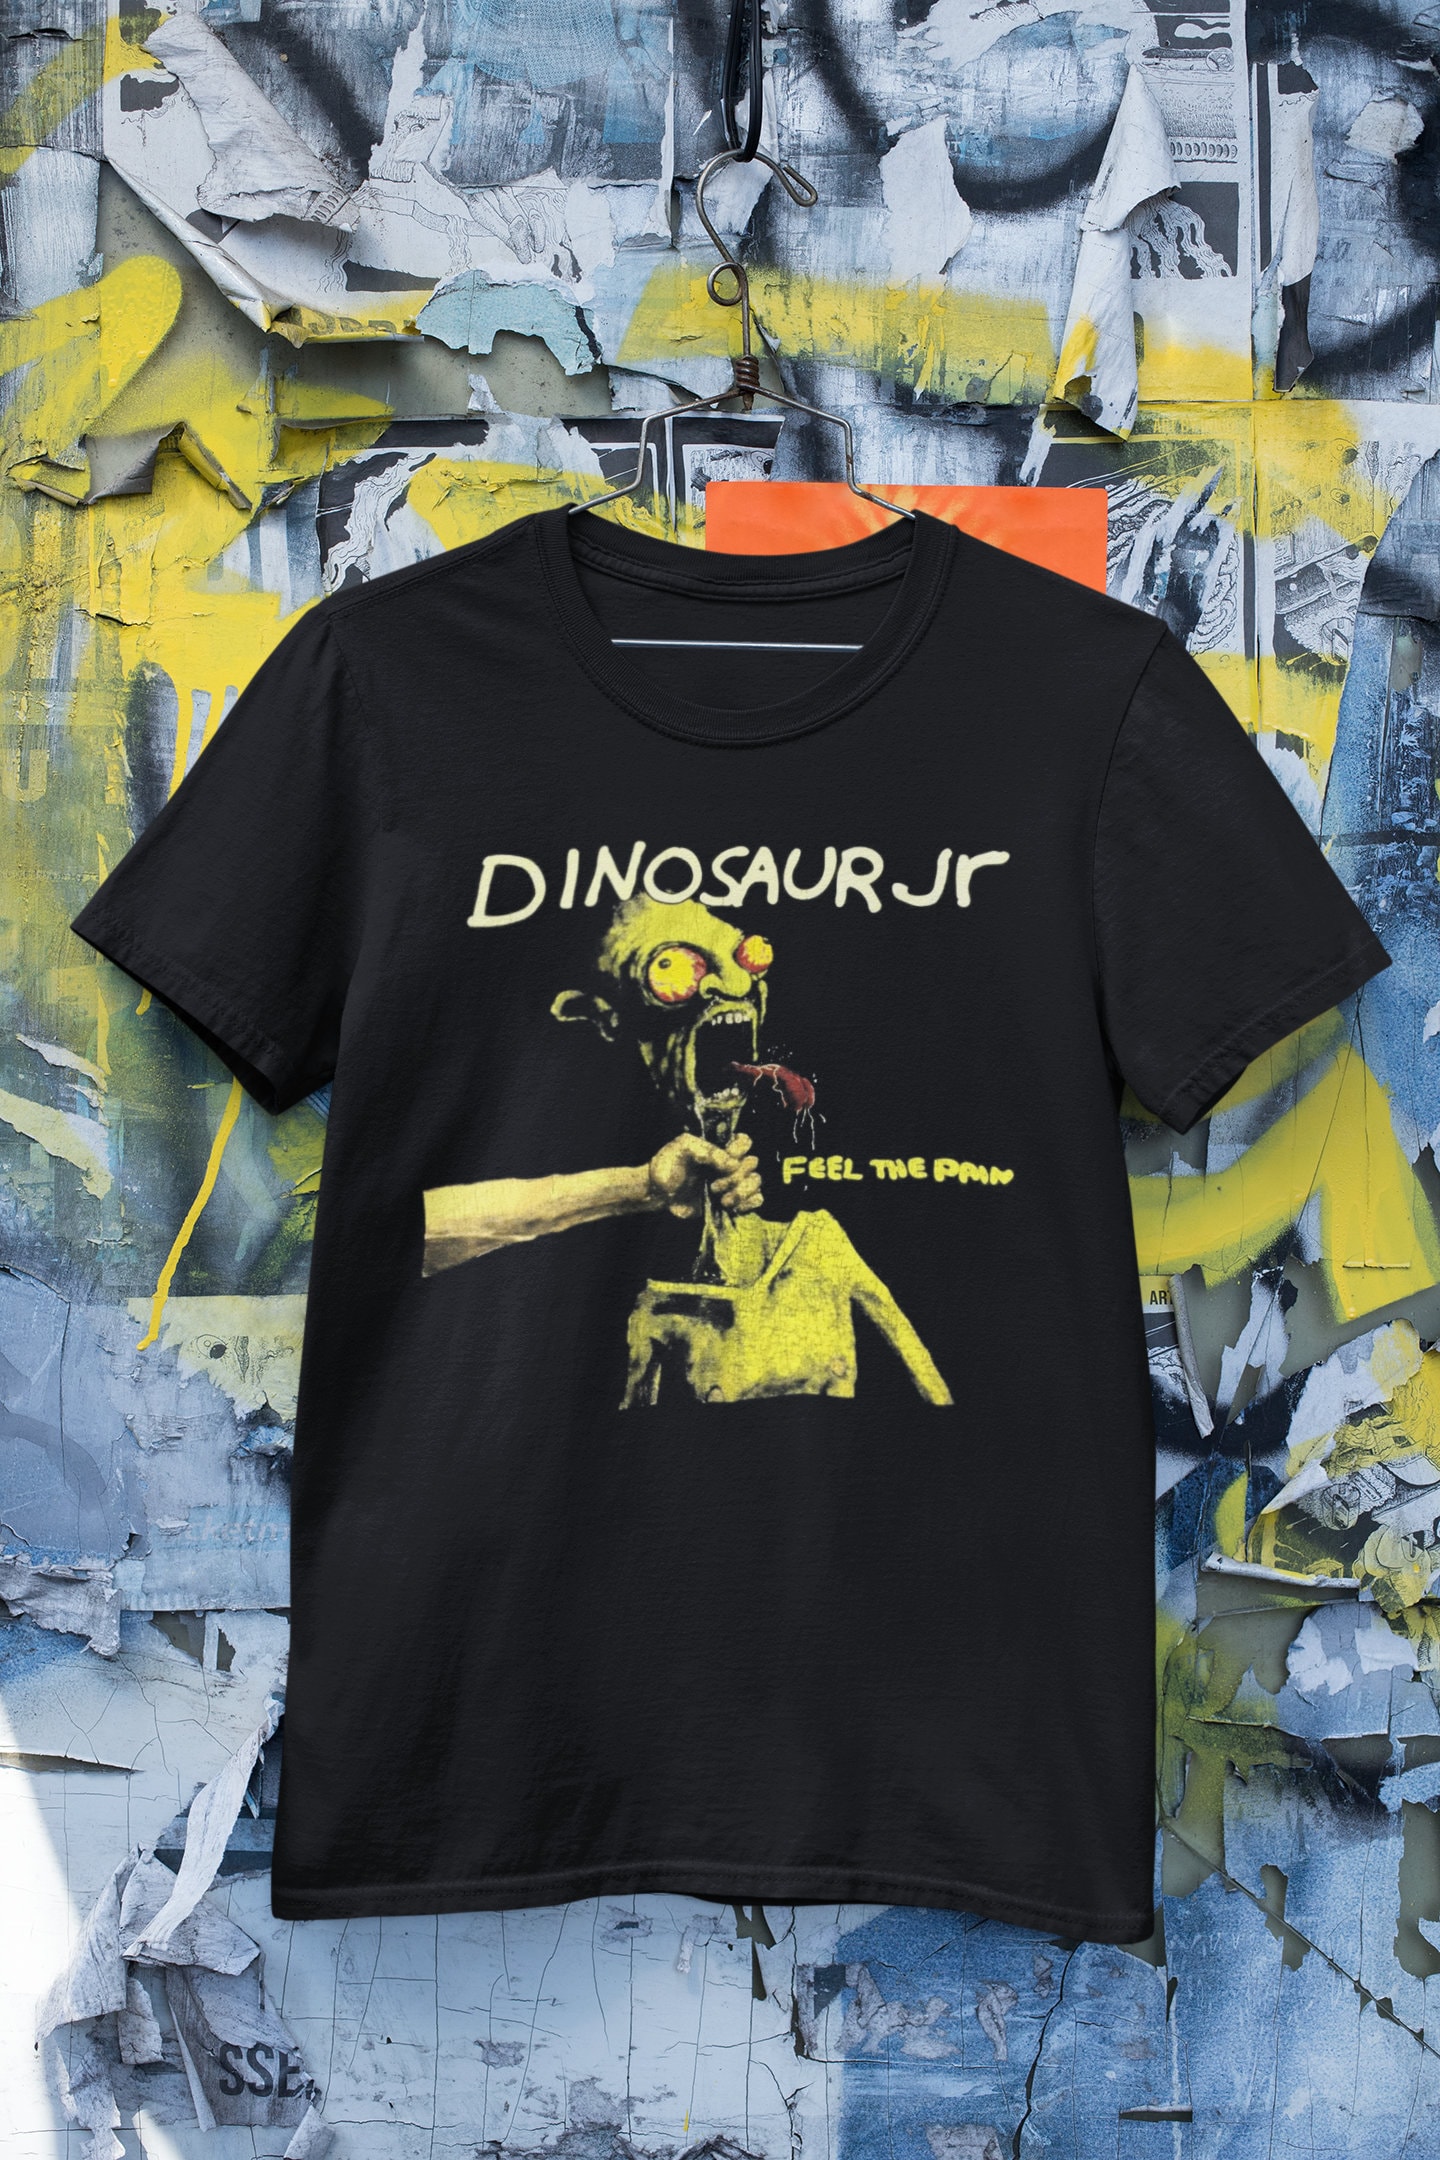 Dinosaurier Jr Tshirt Hoodie Longsleeve Vintage Unisex von RomioshopID